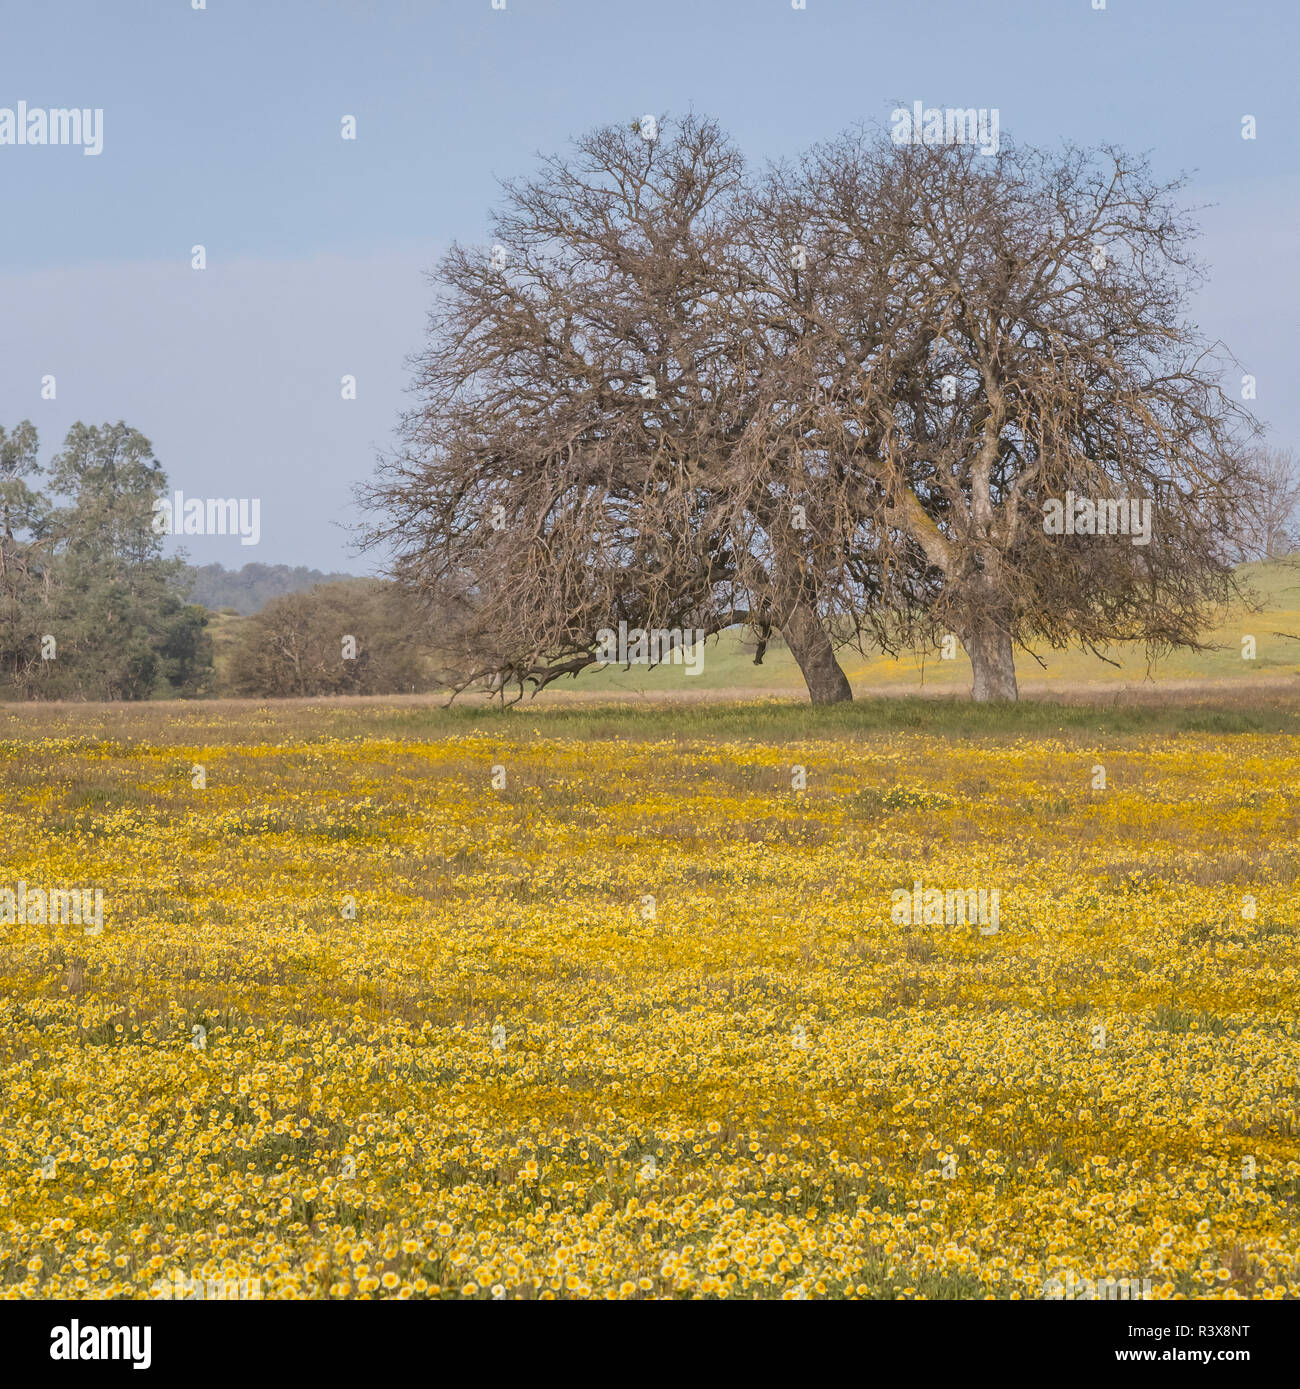 États-unis, Californie, Shell Creek Road. Domaine de tidy astuce fleurs et arbres de chêne. En tant que crédit : Don Paulson / Galerie / DanitaDelimont Jaynes. com Banque D'Images